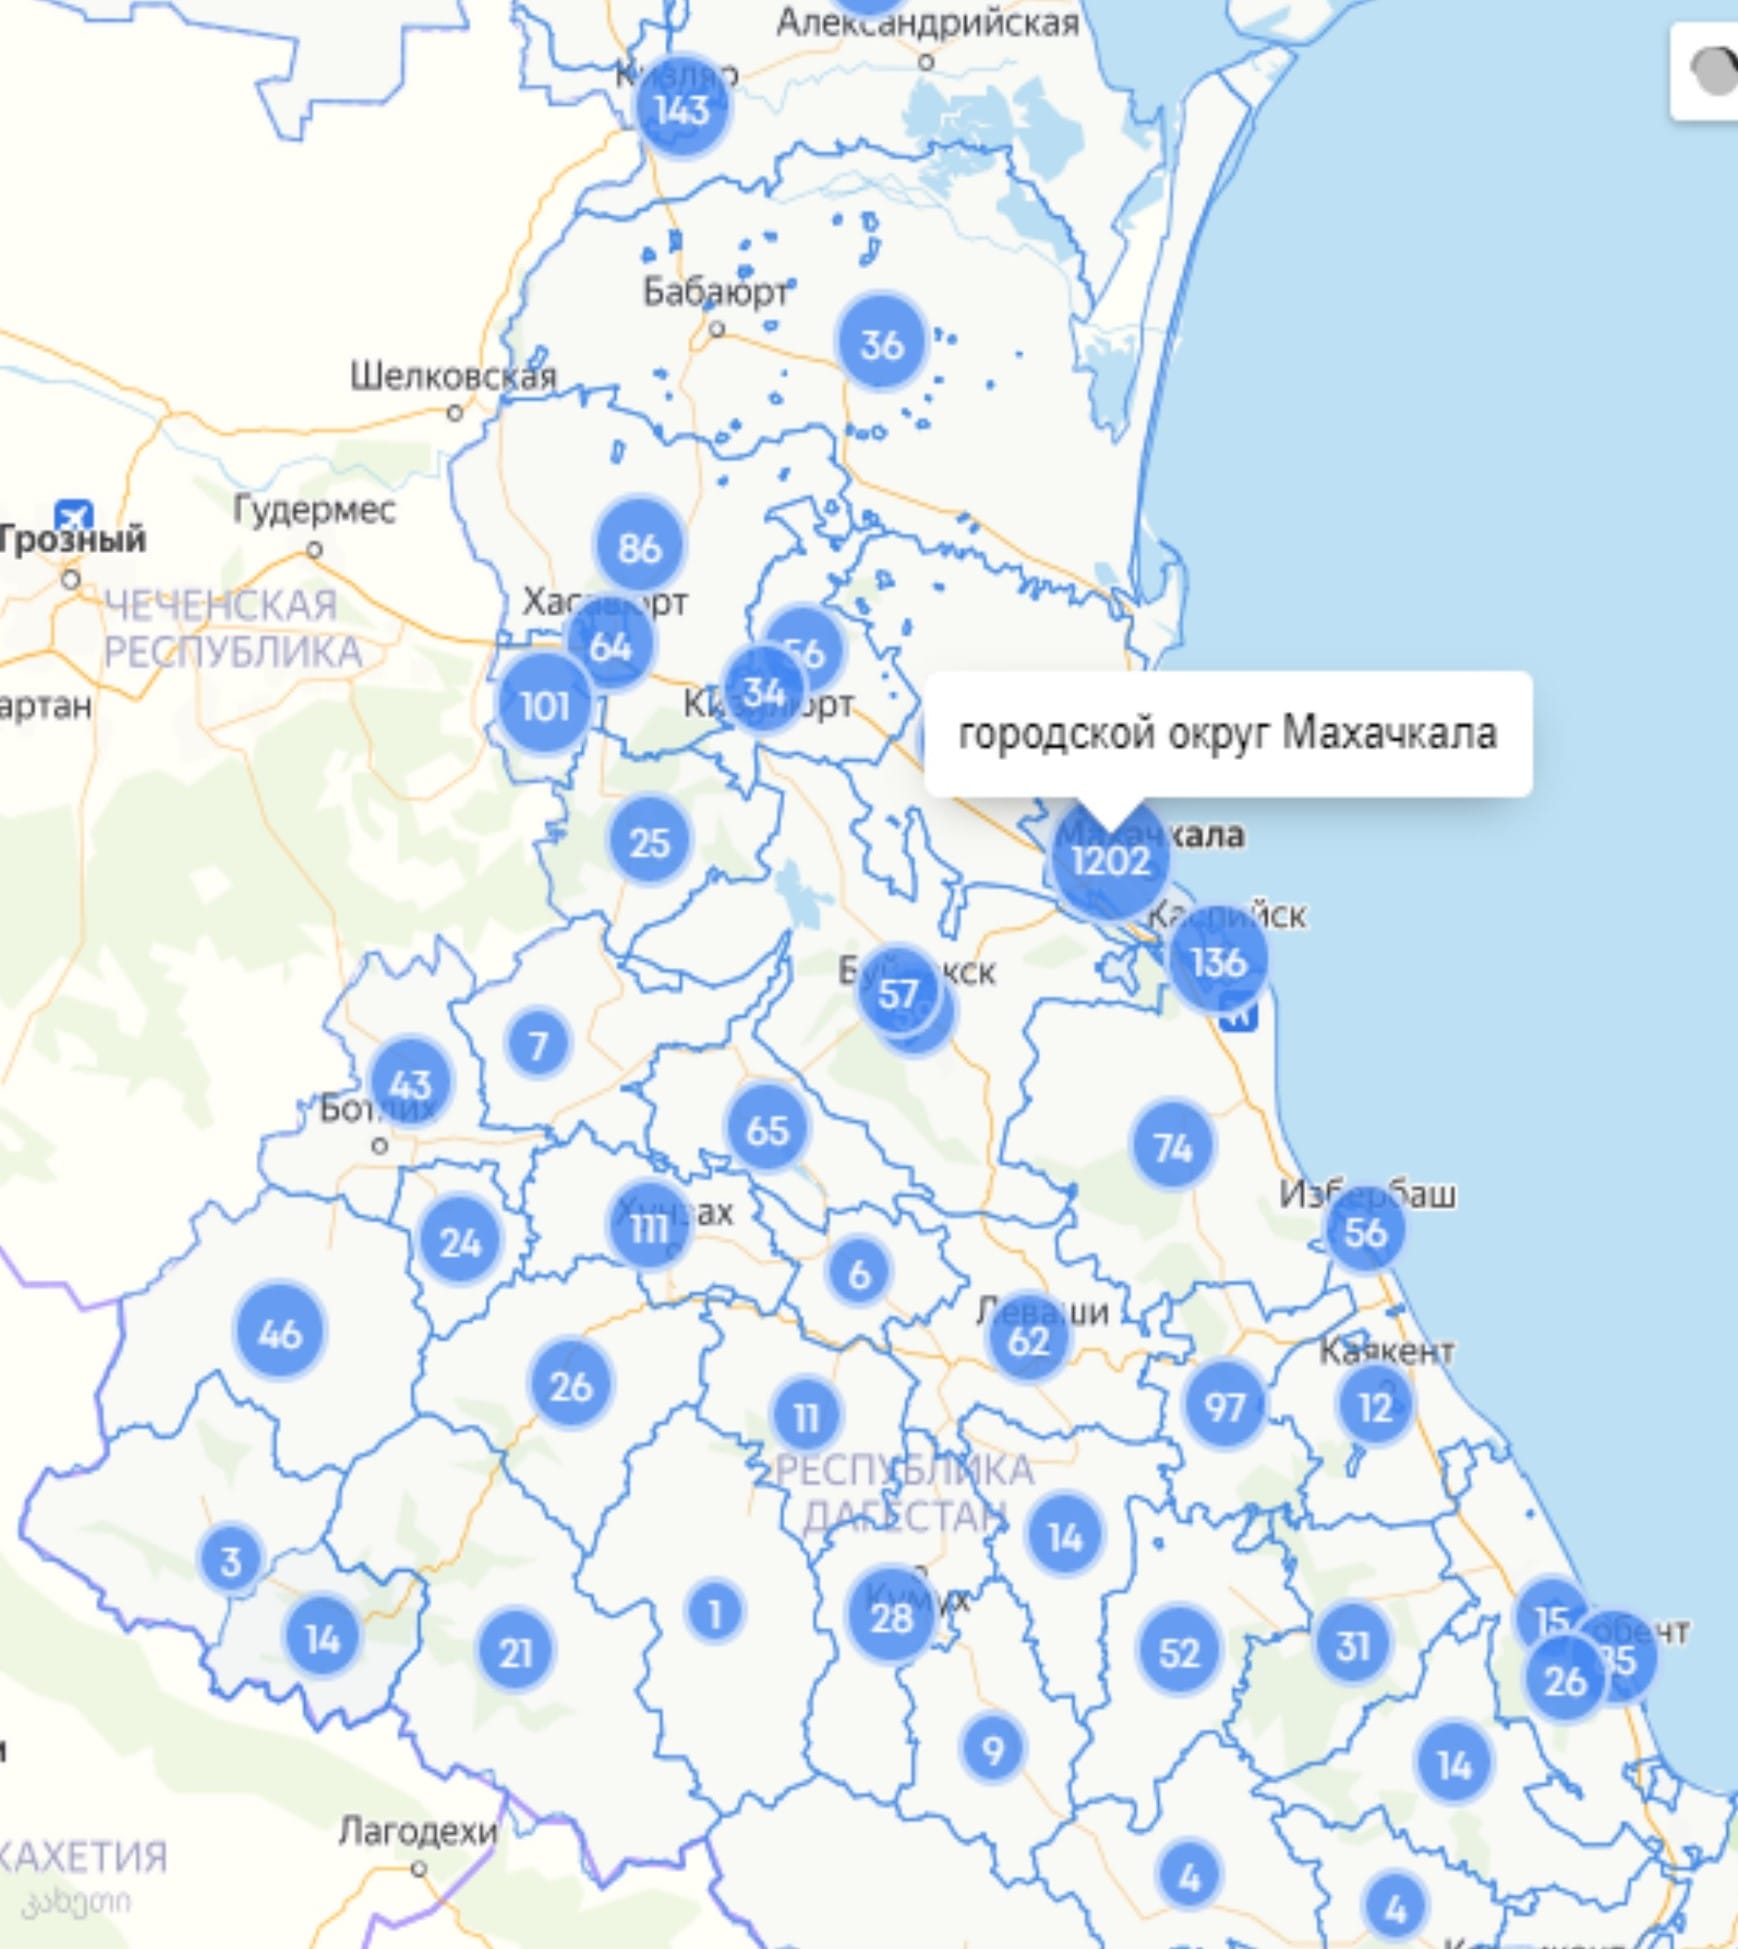 Скриншот карты распространения коронавируса в Дагестане по состоянию на 16 мая 2020 года, https://mydagestan.e-dag.ru